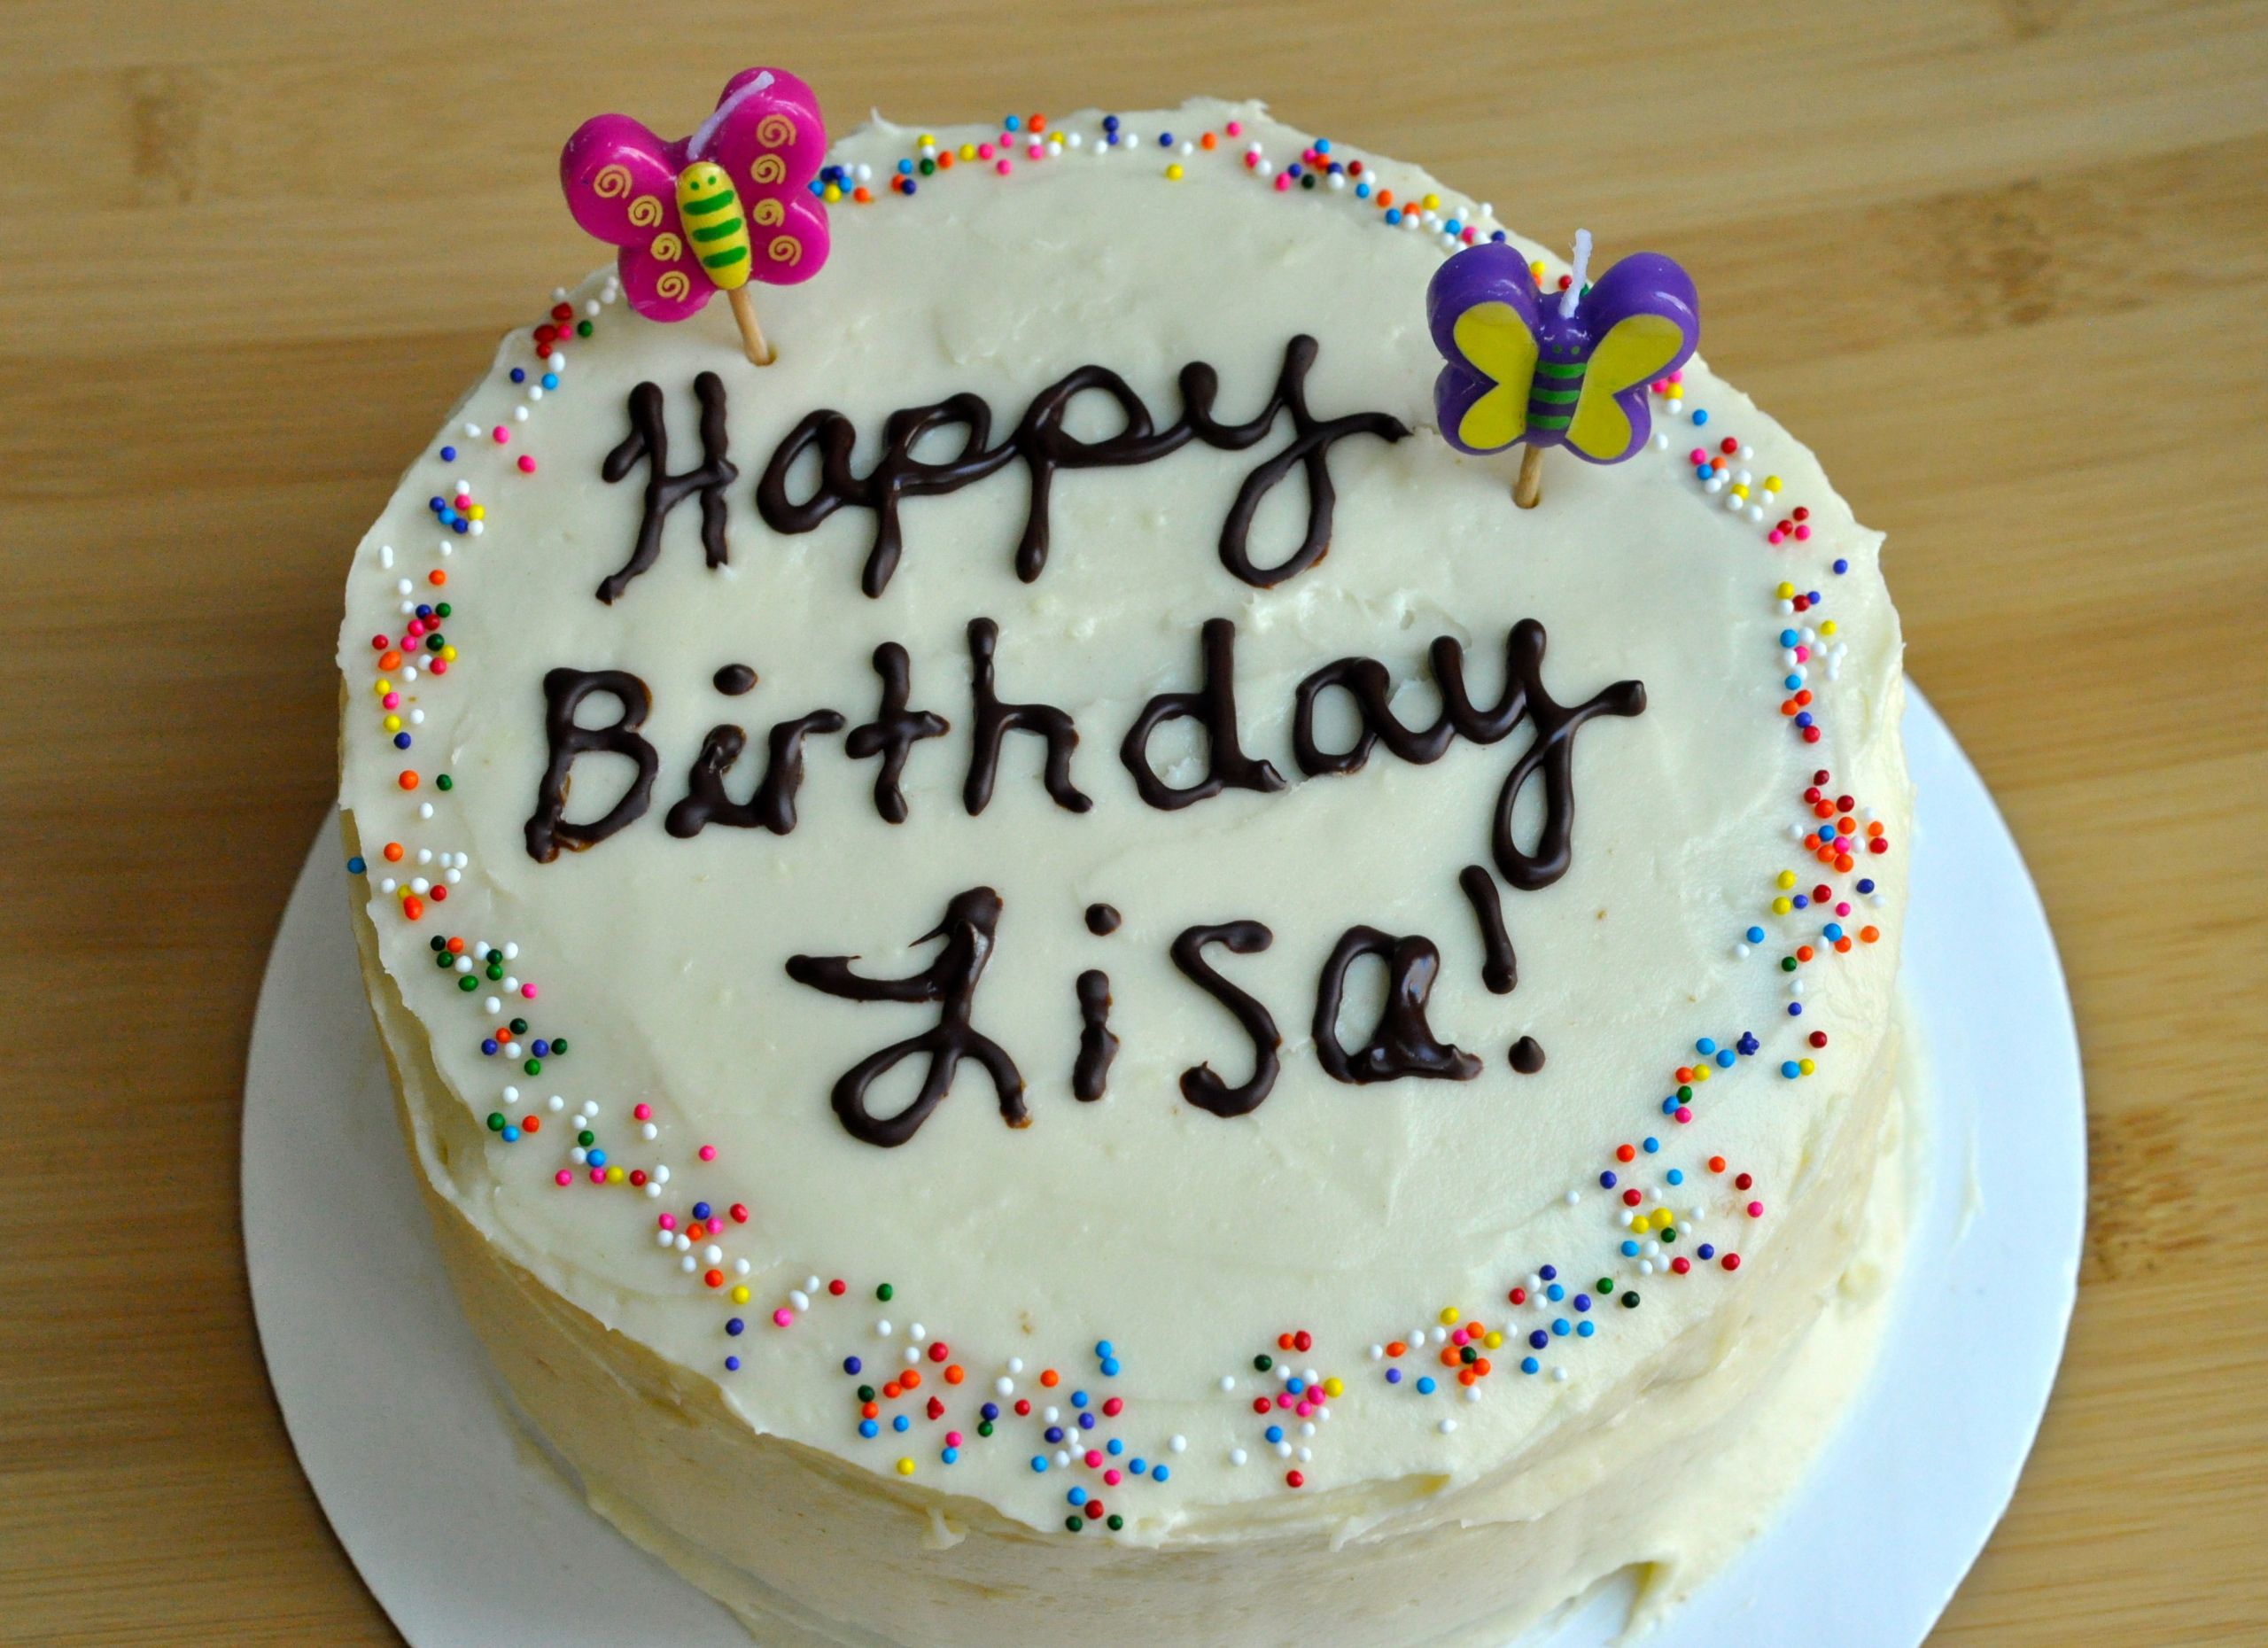 Happy Birthday Lisa Cake Elegant Best Carrot Cake for Lisa